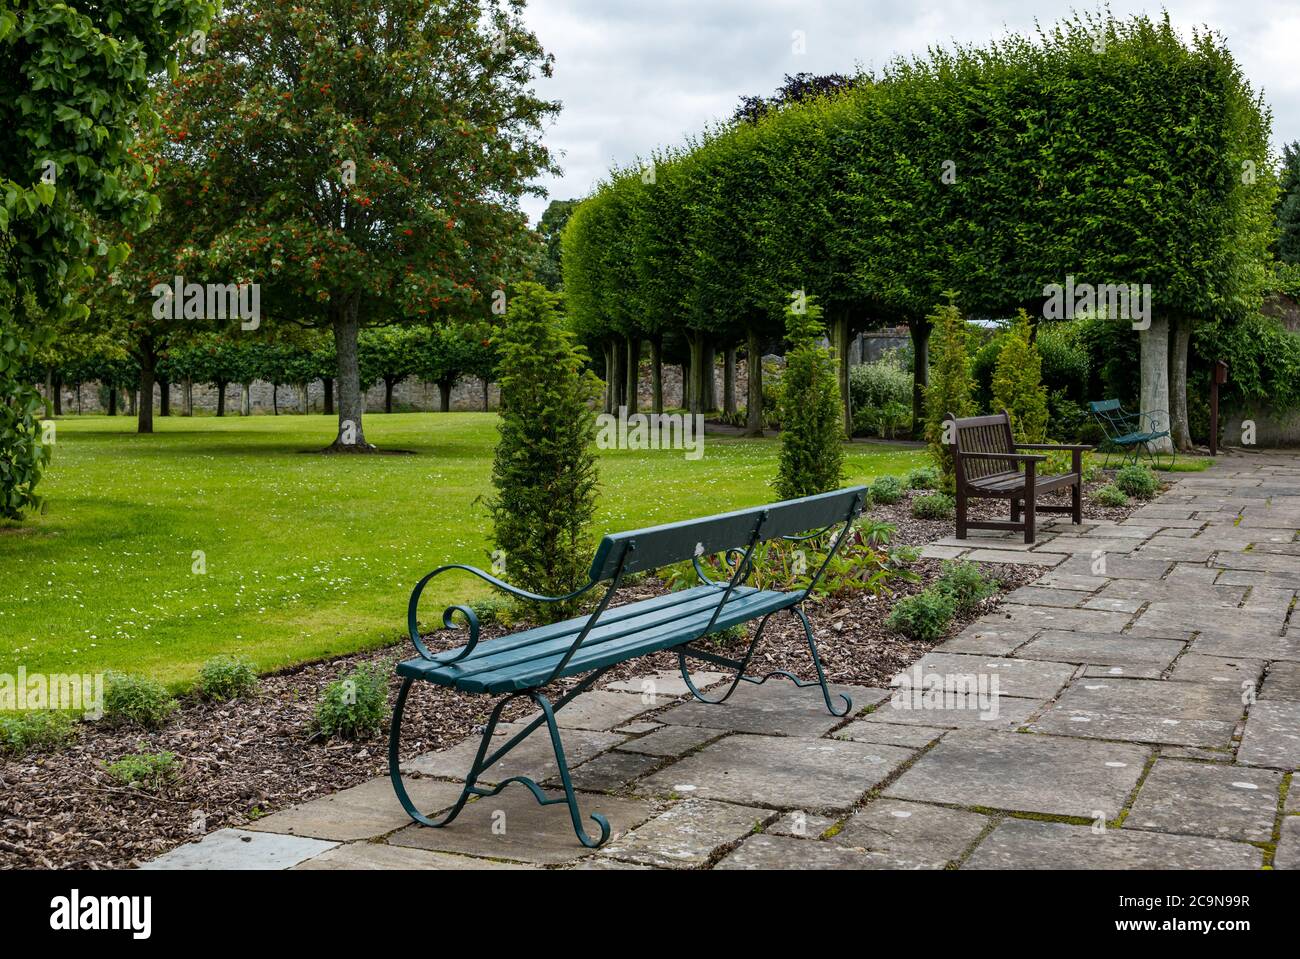 Faltenboxkopf Hainbuche Bogen in formalen 17. Jahrhundert Garten mit Bänken, St. Mary's Pleasance, Haddington, East Lothian, Schottland, Großbritannien Stockfoto